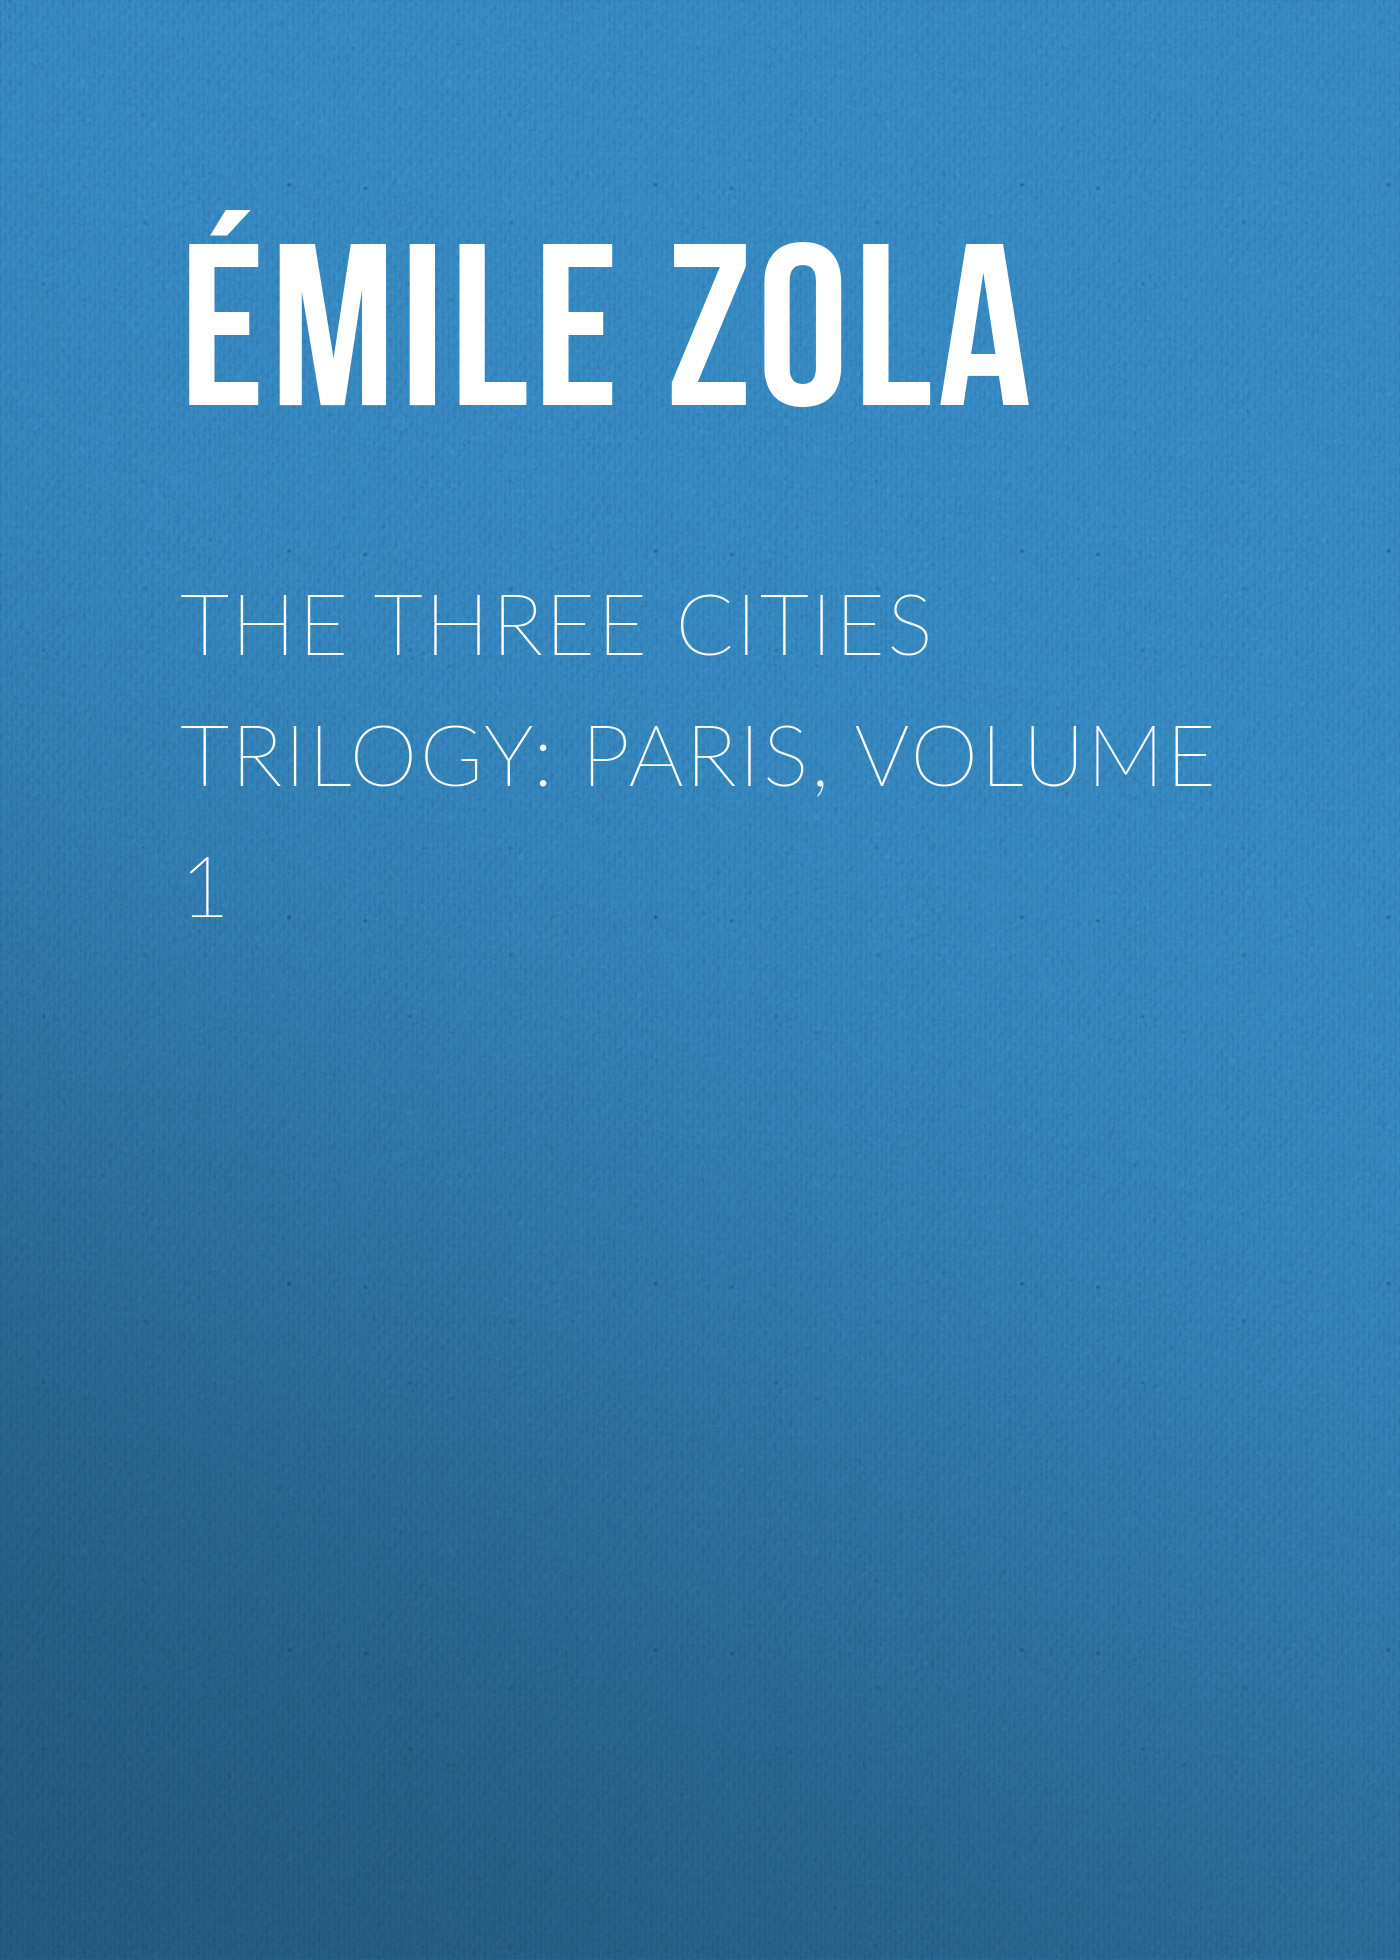 Книга The Three Cities Trilogy: Paris, Volume 1 из серии , созданная Émile Zola, может относится к жанру Литература 19 века, Зарубежная старинная литература, Зарубежная классика. Стоимость электронной книги The Three Cities Trilogy: Paris, Volume 1 с идентификатором 25559580 составляет 0 руб.